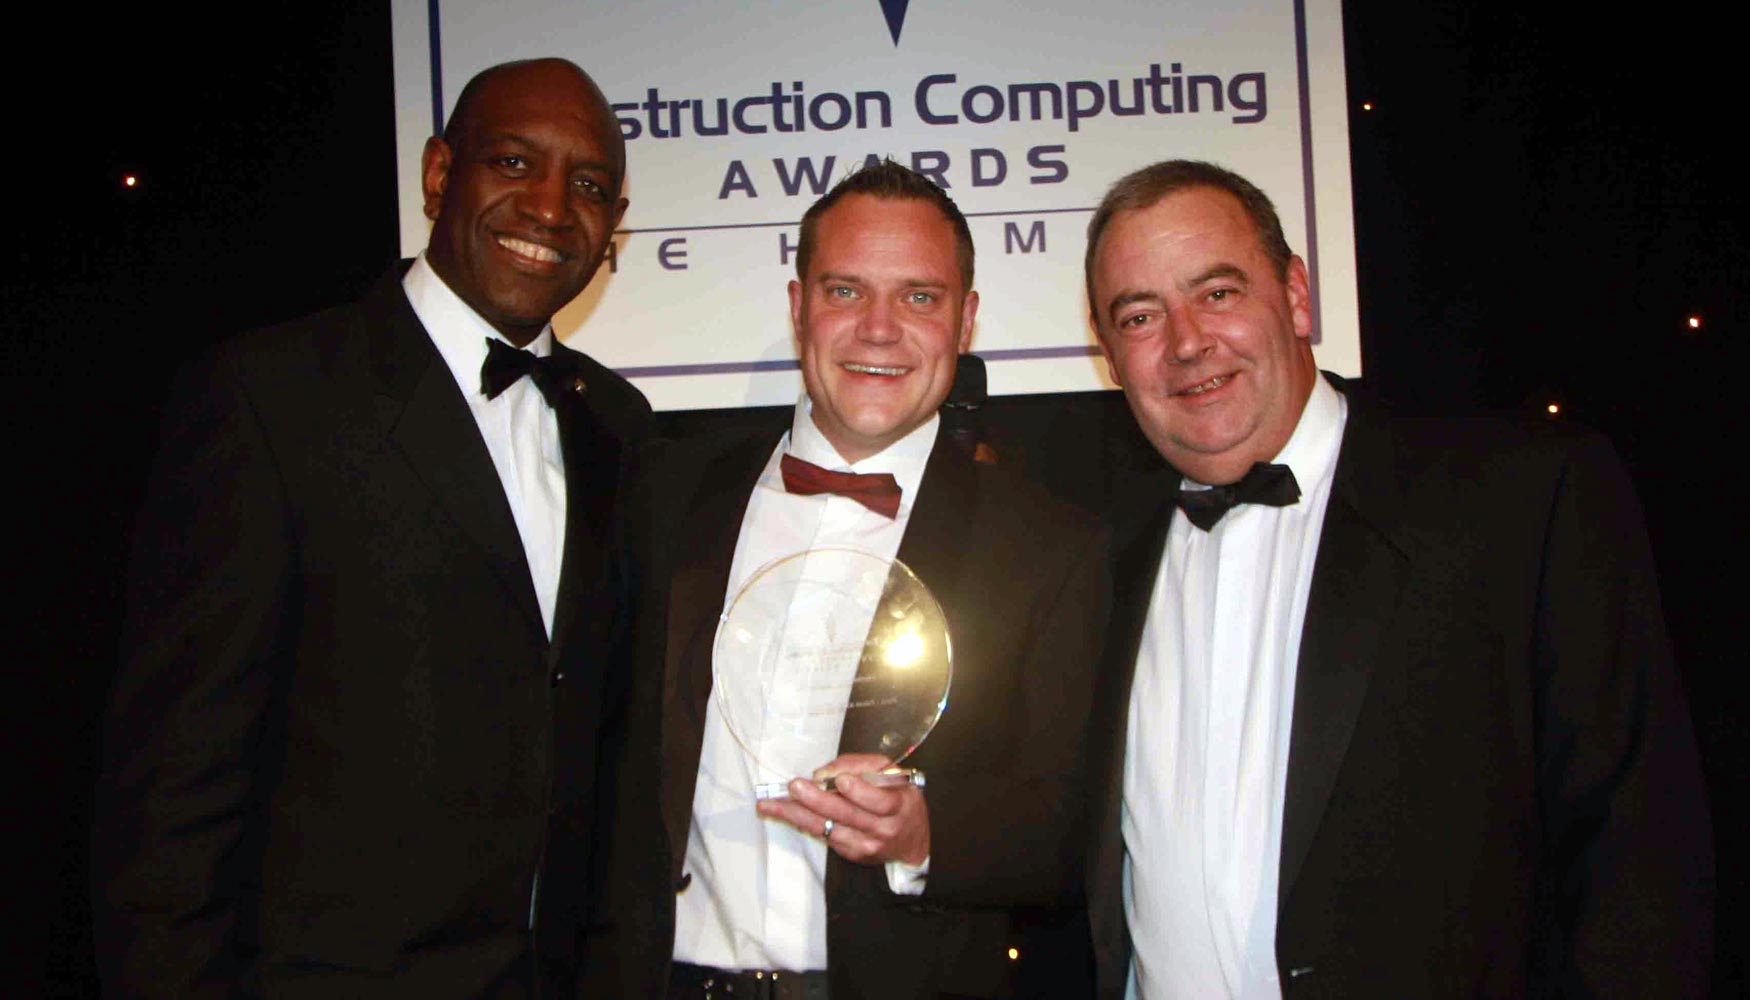 Los galardones Construction Computing Awards han premiado tecnologa, herramientas y soluciones para disear, construir...